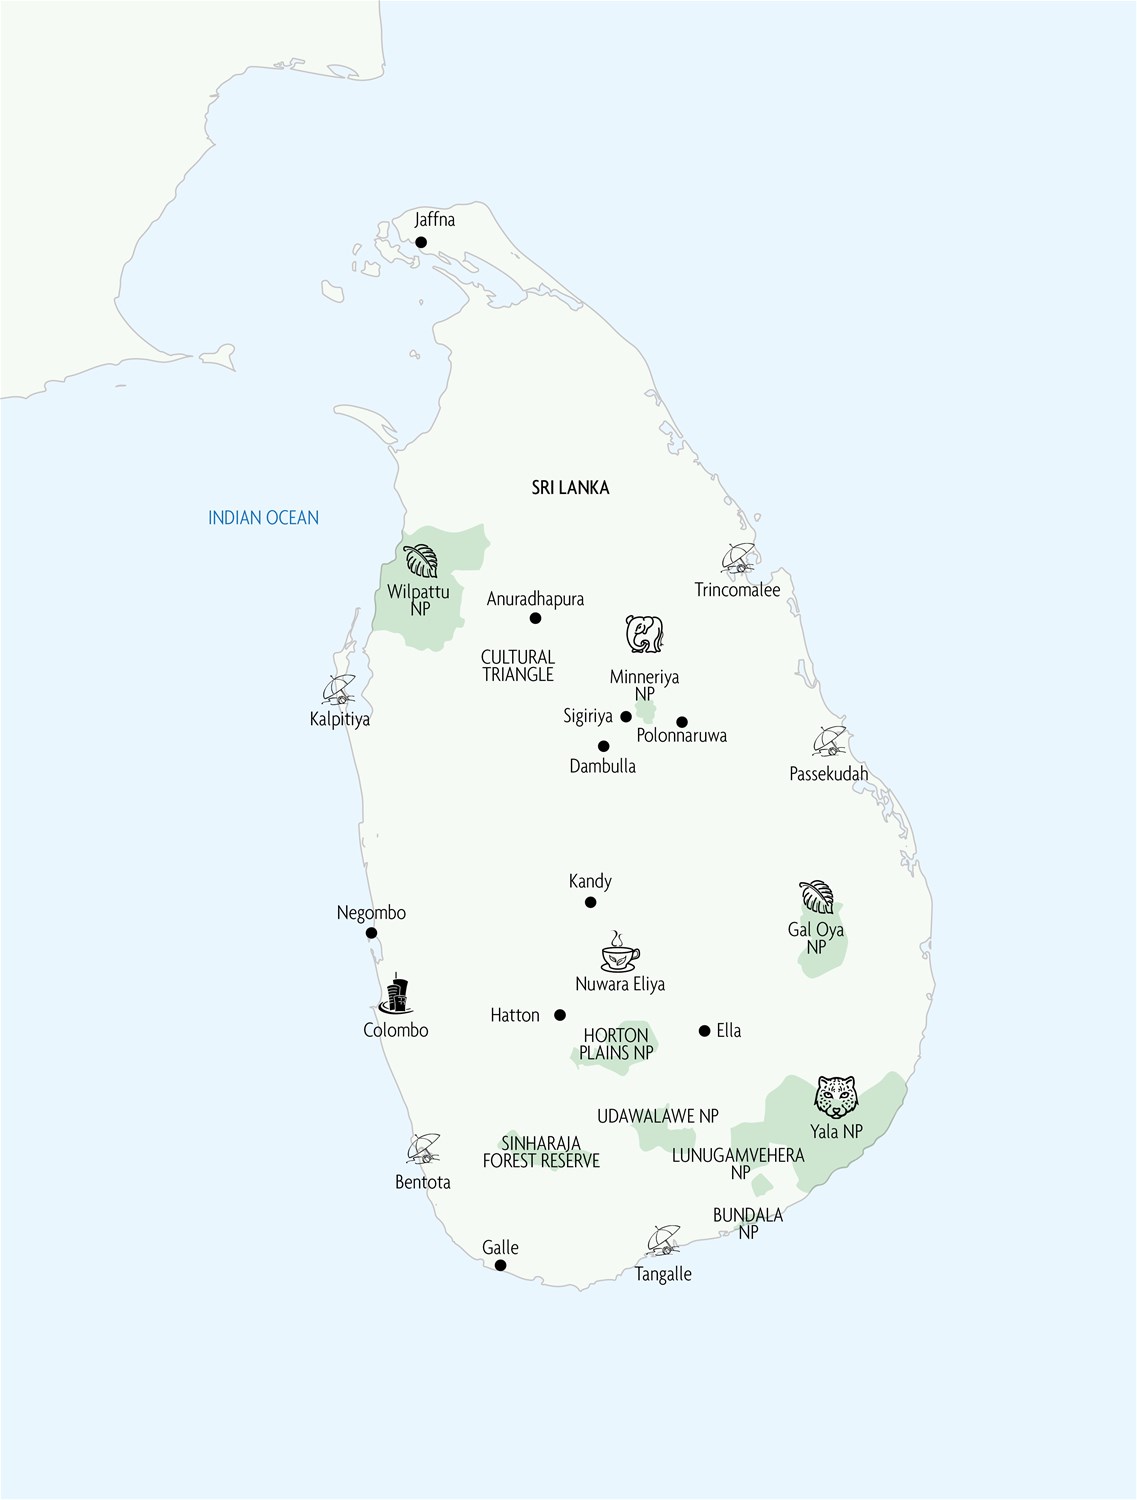 INDSRI Sri Lanka Main Map 01 1500x1500 